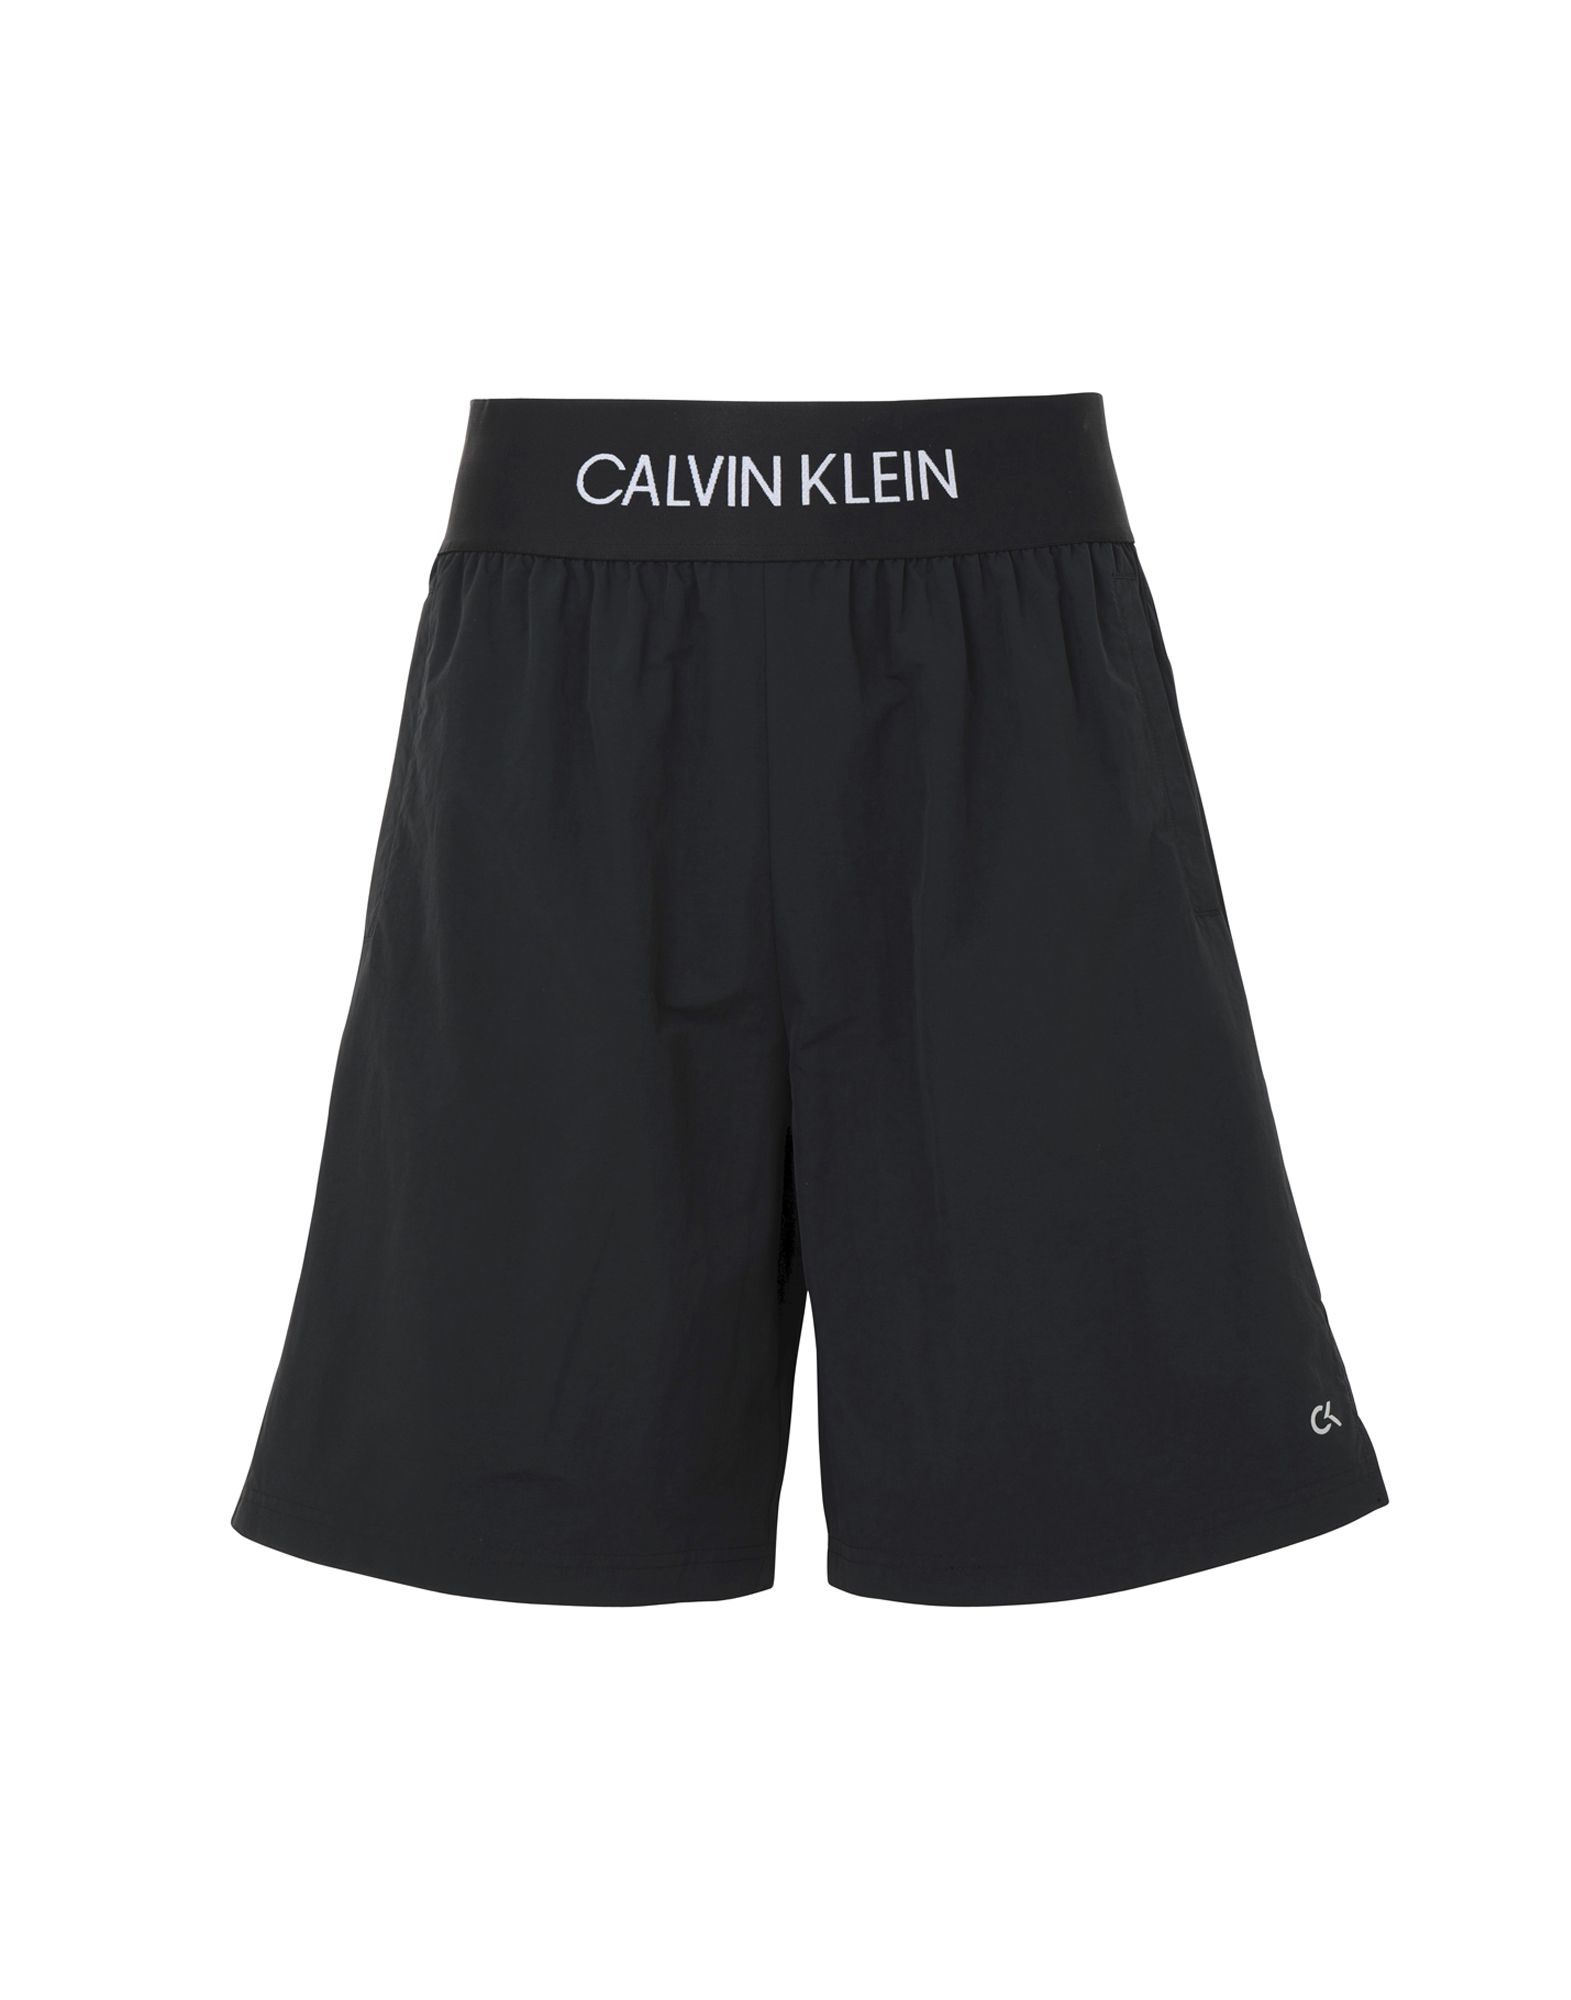 《送料無料》CALVIN KLEIN PERFORMANCE メンズ バミューダパンツ ブラック S ナイロン 100% WOVEN SHORT